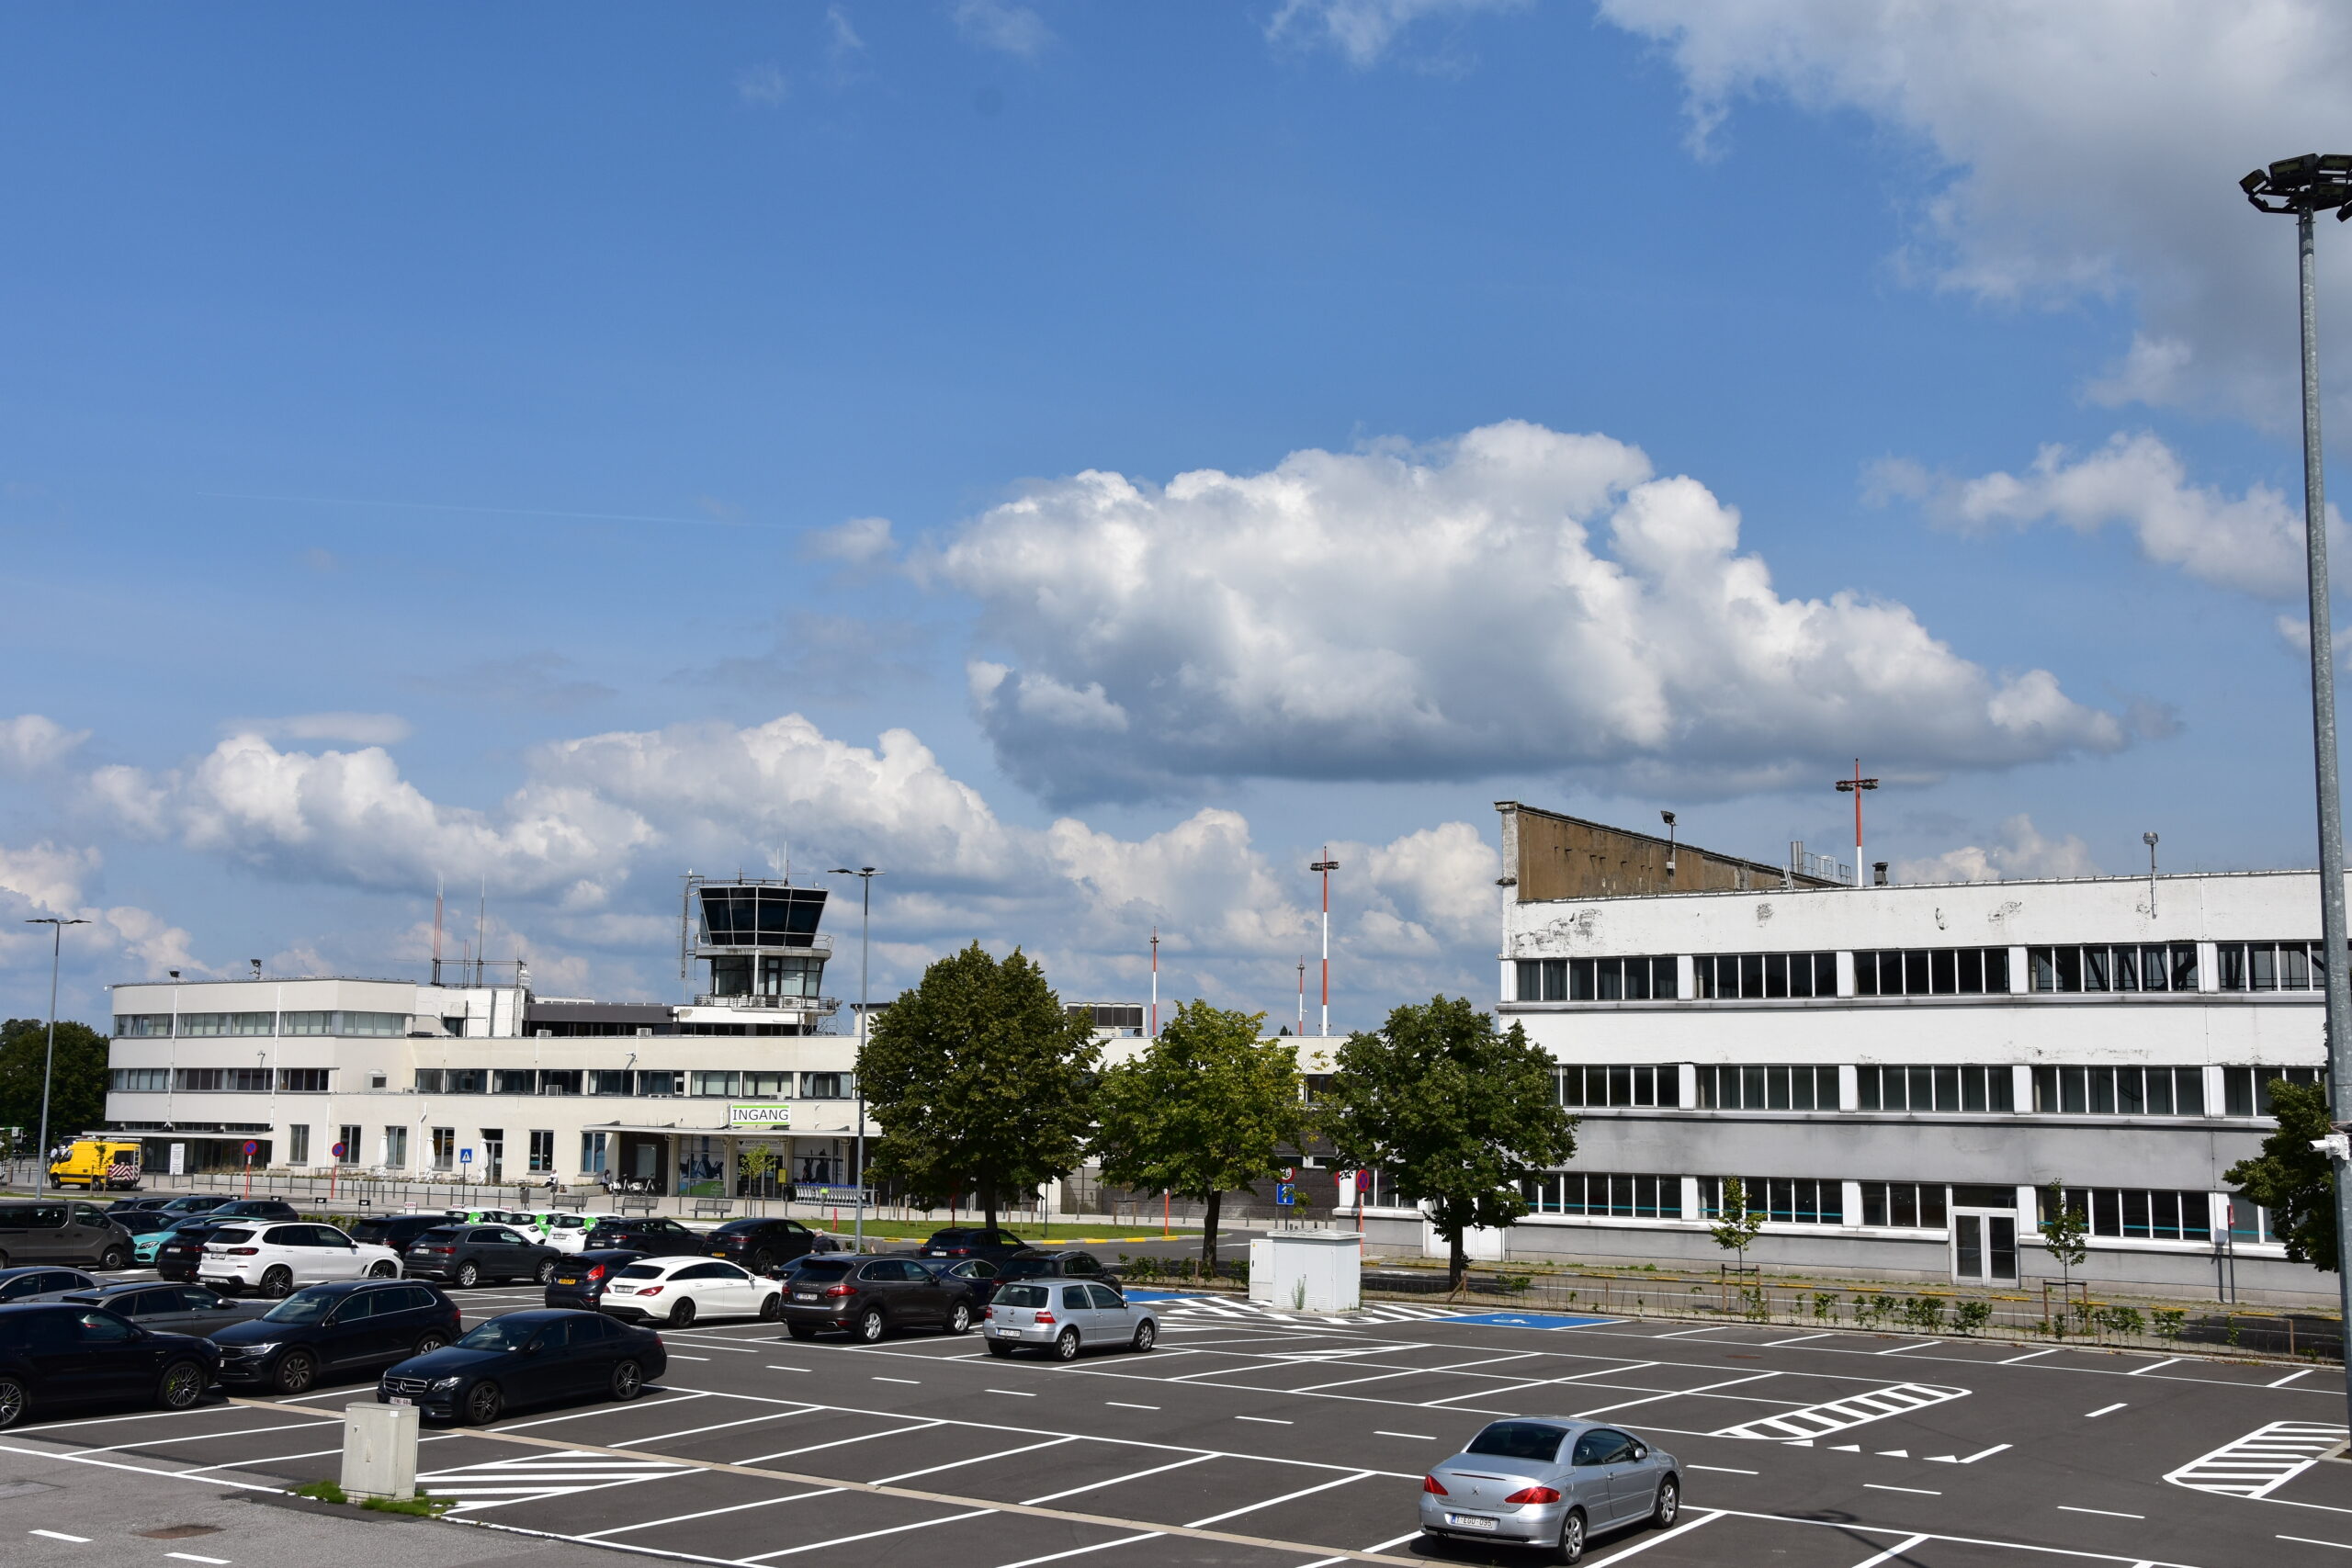 Luchthaven Deurne nooit rendabel zonder subsidies, geef het andere invulling